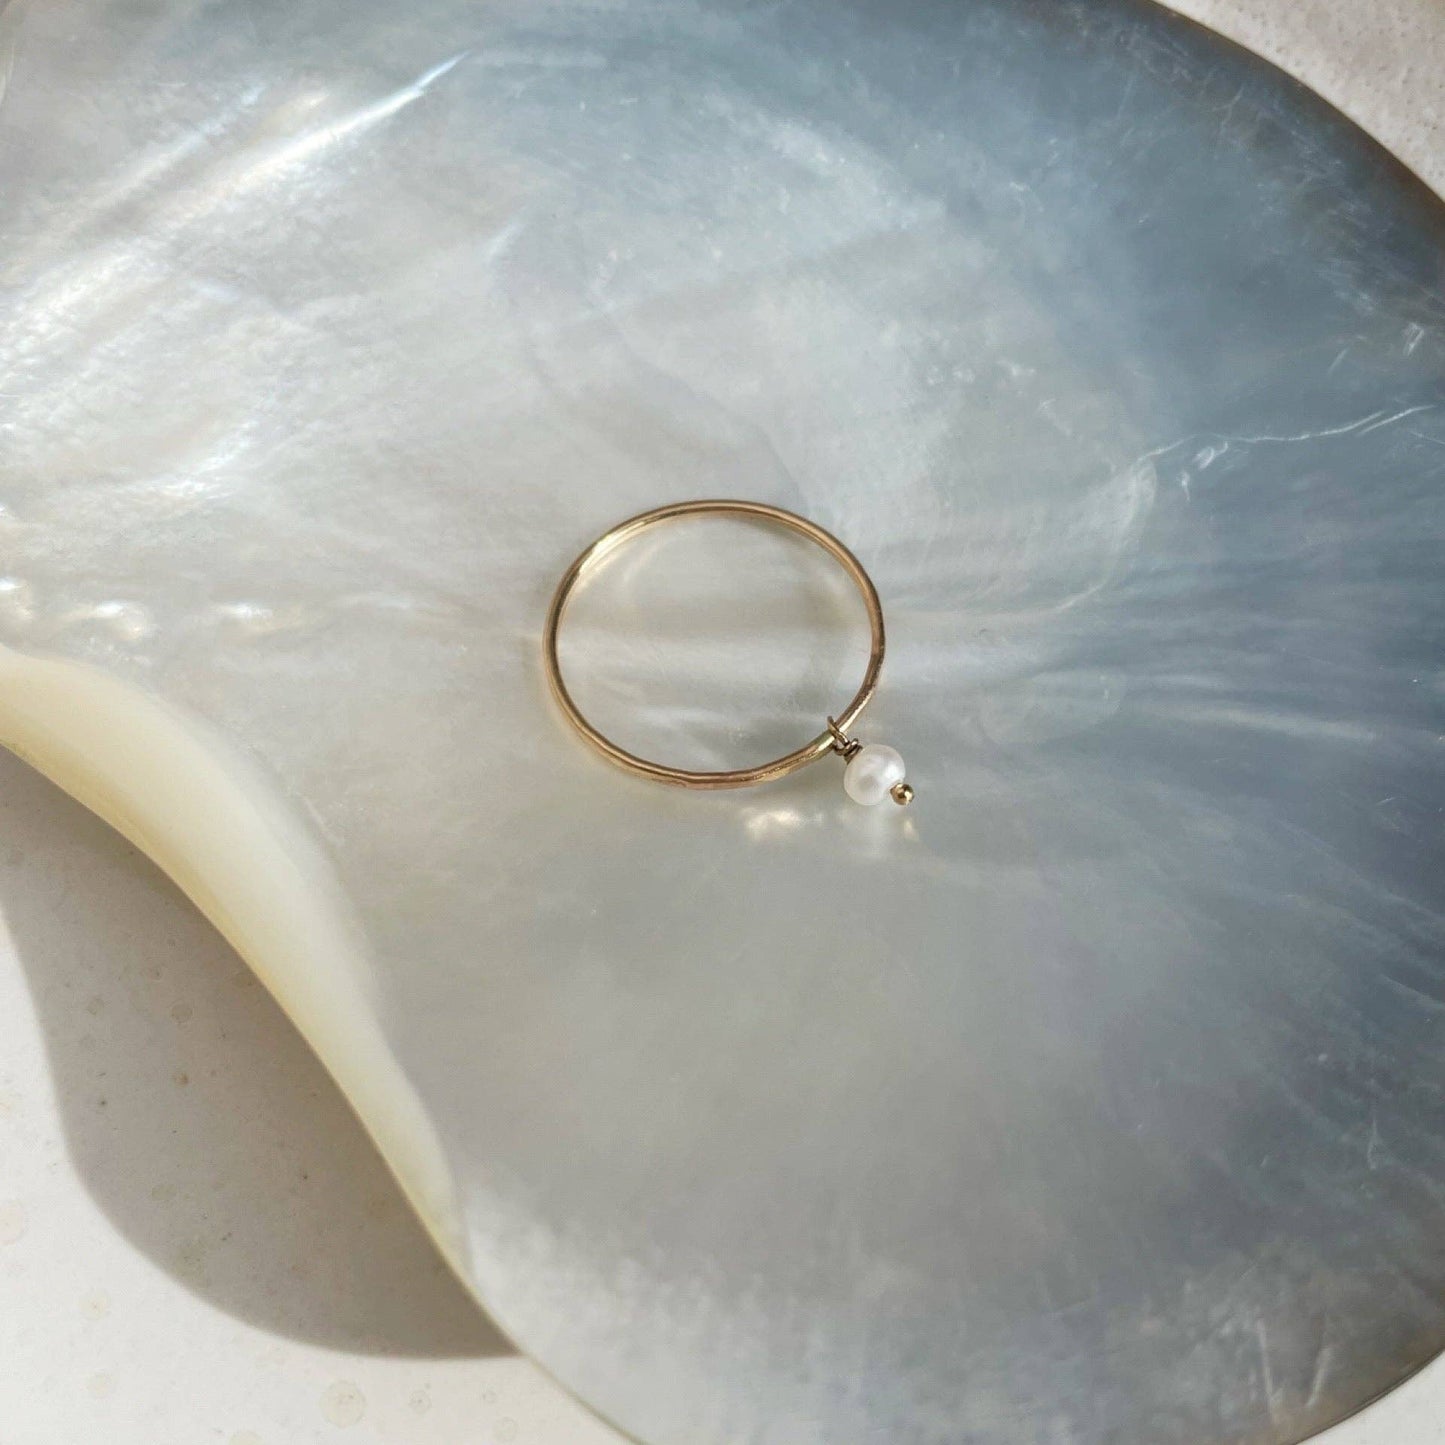 Pearla Ring: 8 / 14k Gold Fill